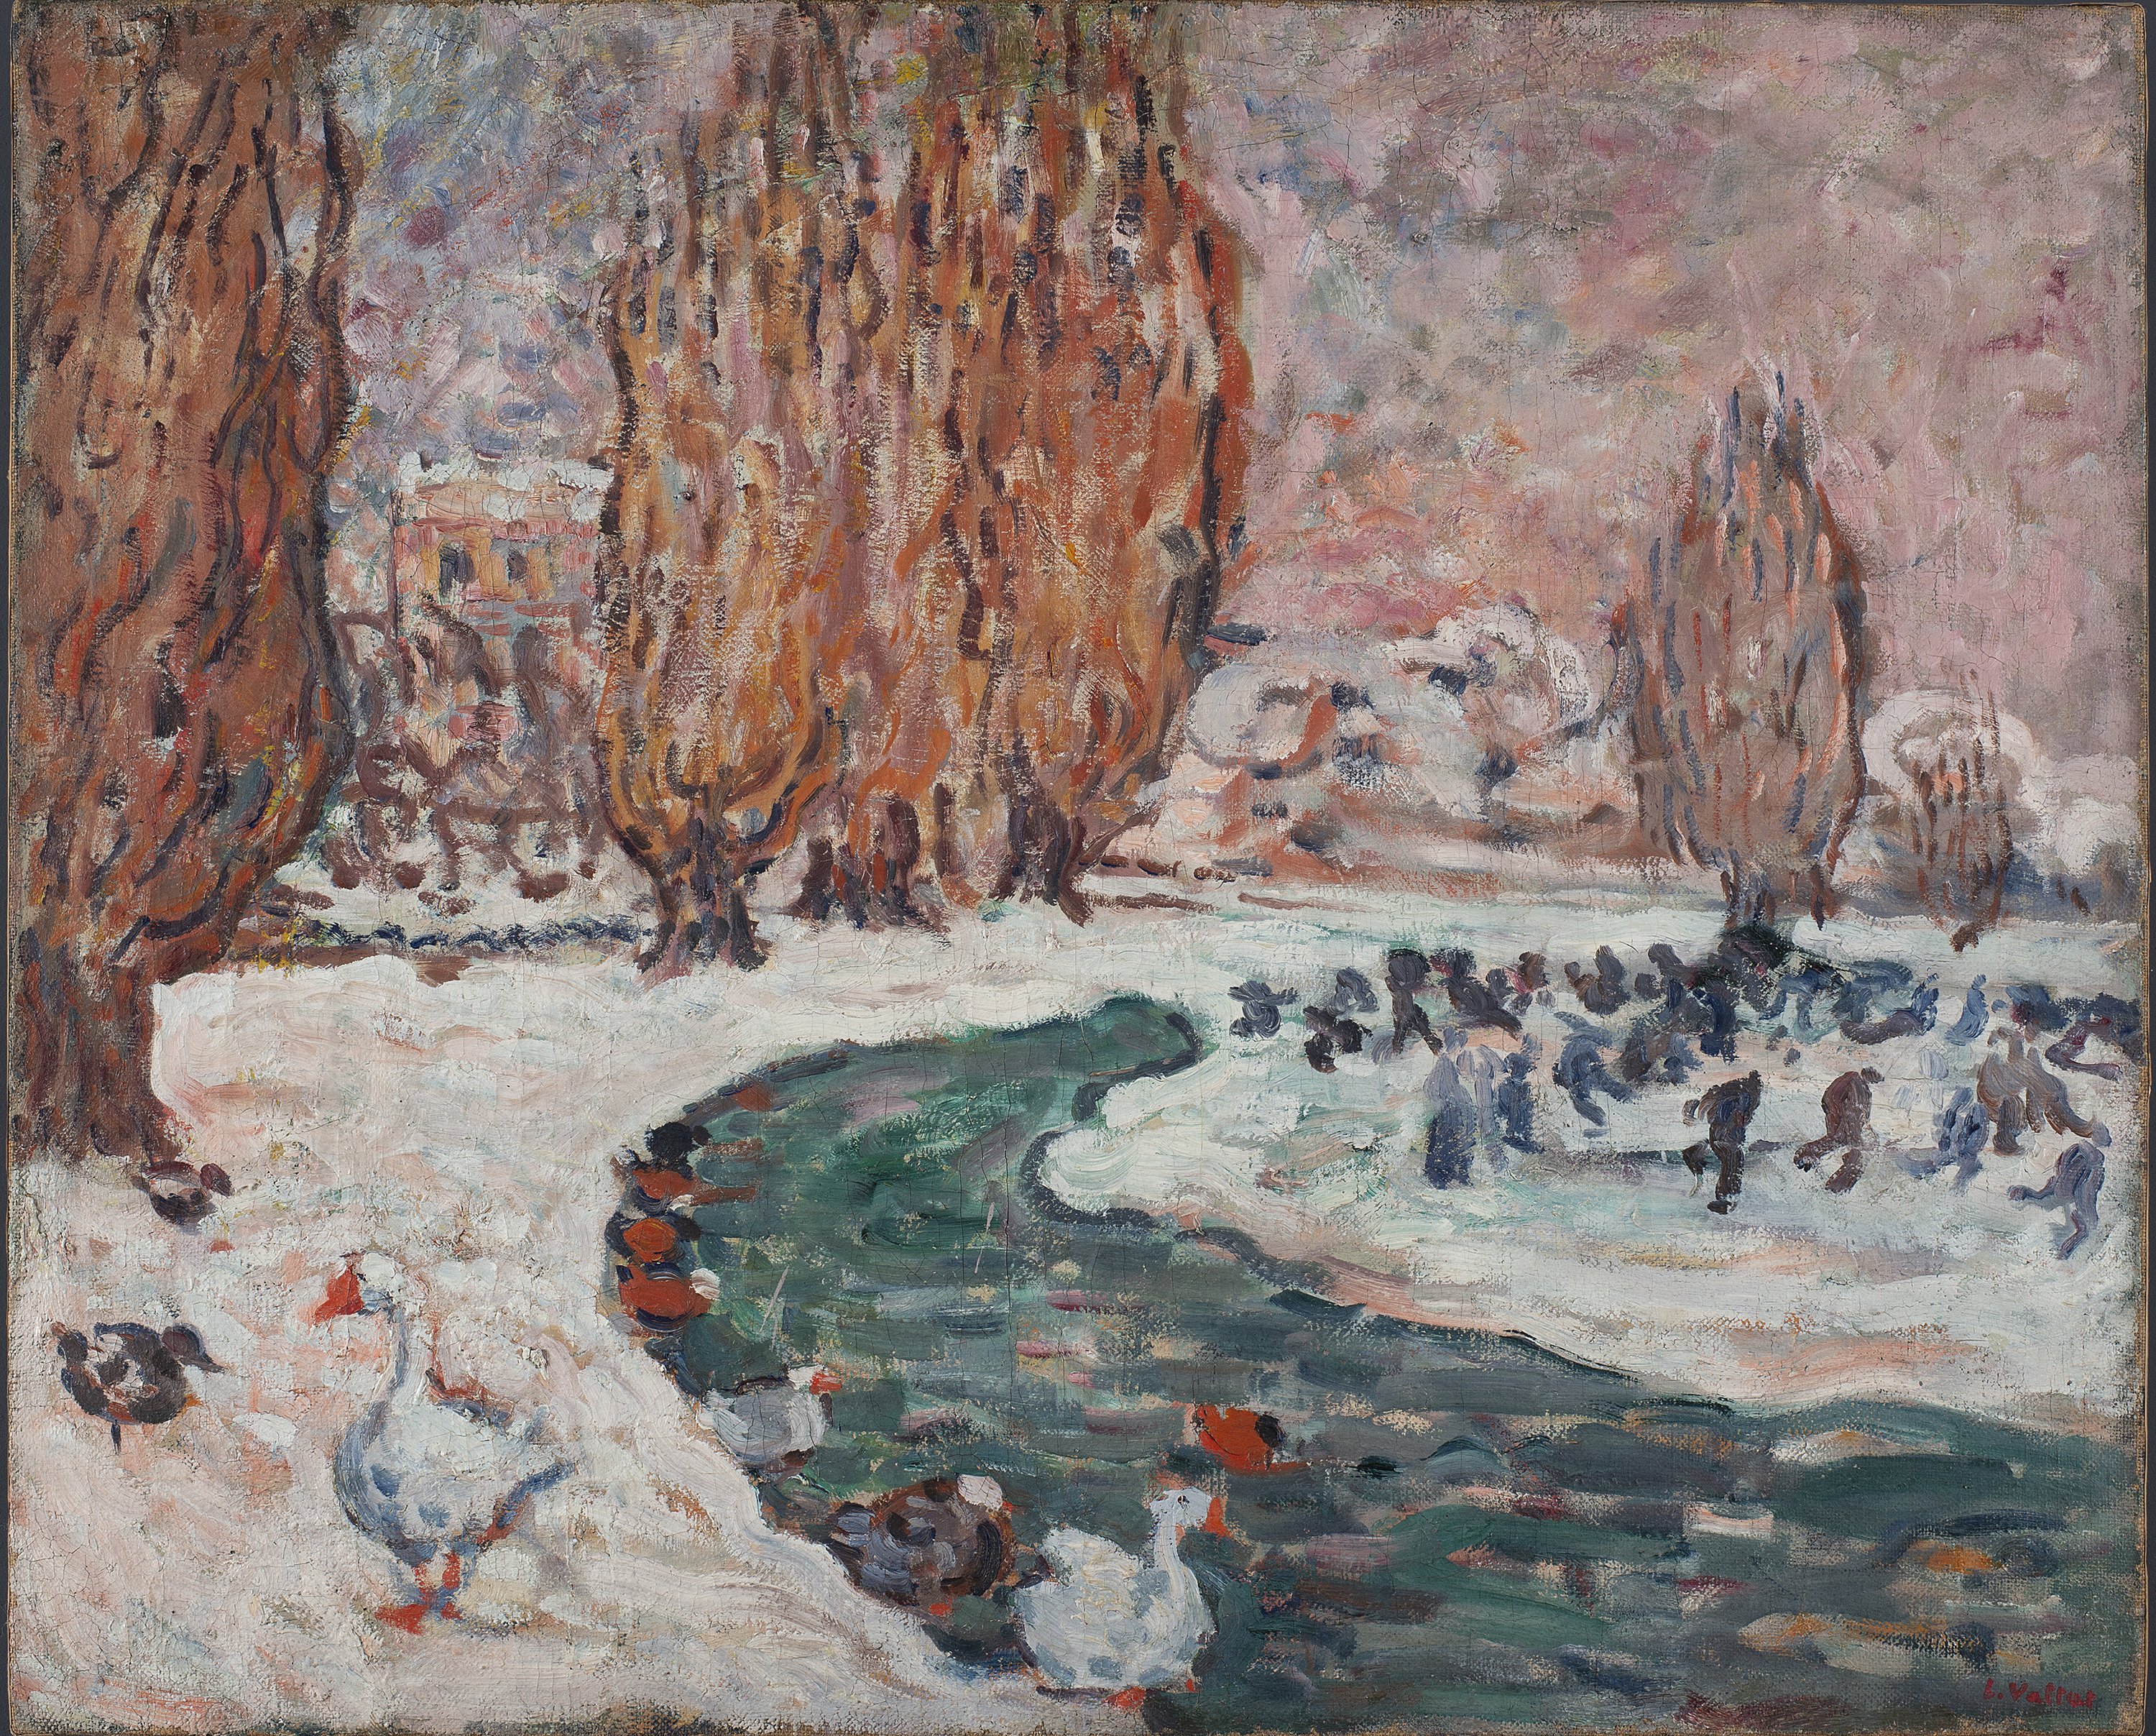 Skaters in Winter (The Garden of the Petit Trianón in Versailles) (?). Patinadores en invierno (El jardín del Pequeño Trianón en Versalles) (?), c. 1900